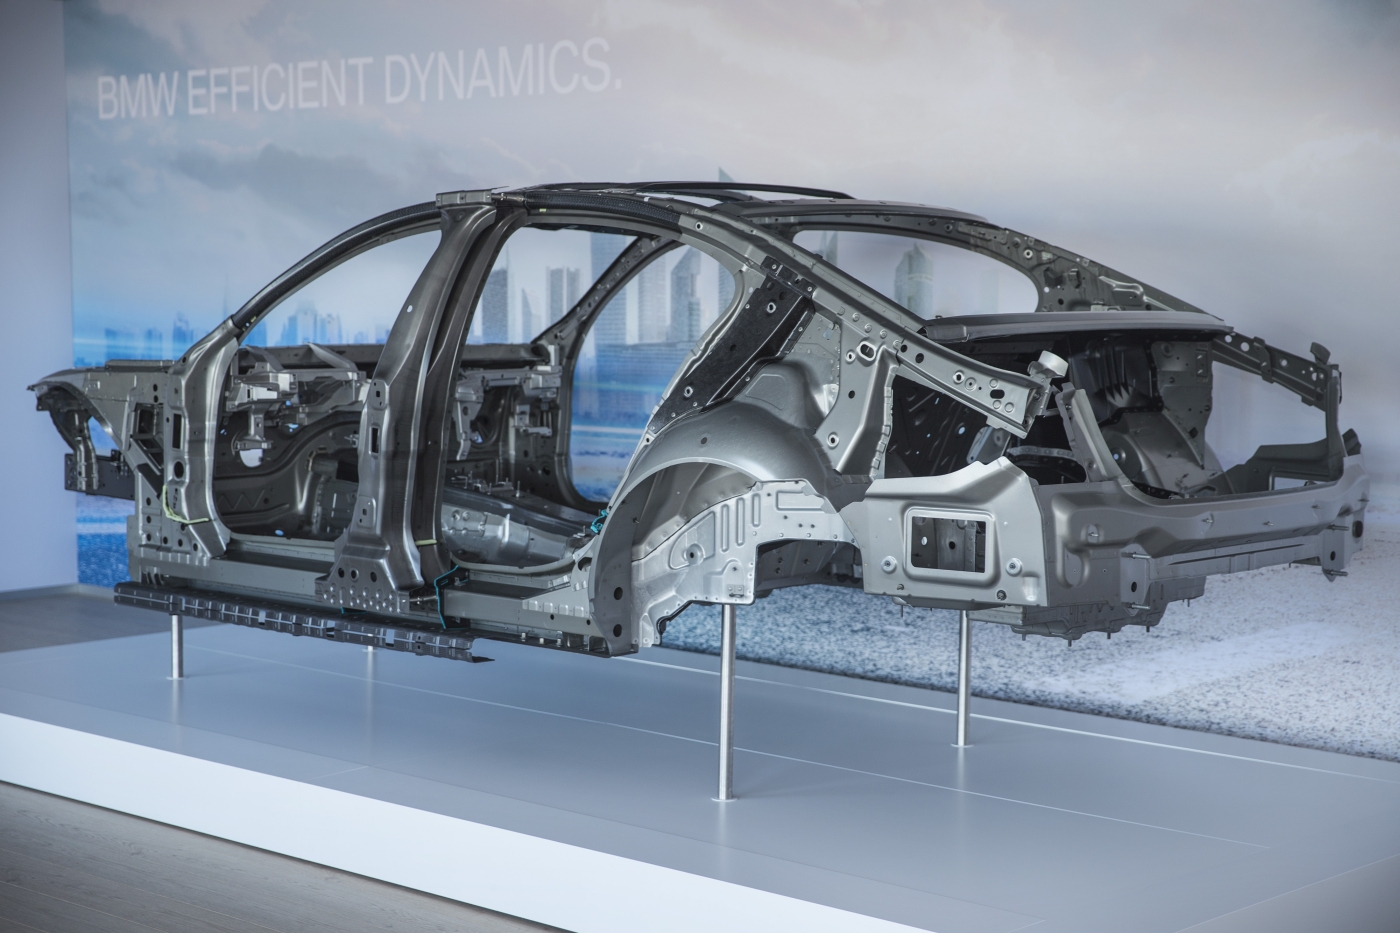 The “Carbon Core” body of the new BMW 7 series is a prime example for the innovative use of composites in large-scale automotive production. © BMW Group/SGL Group